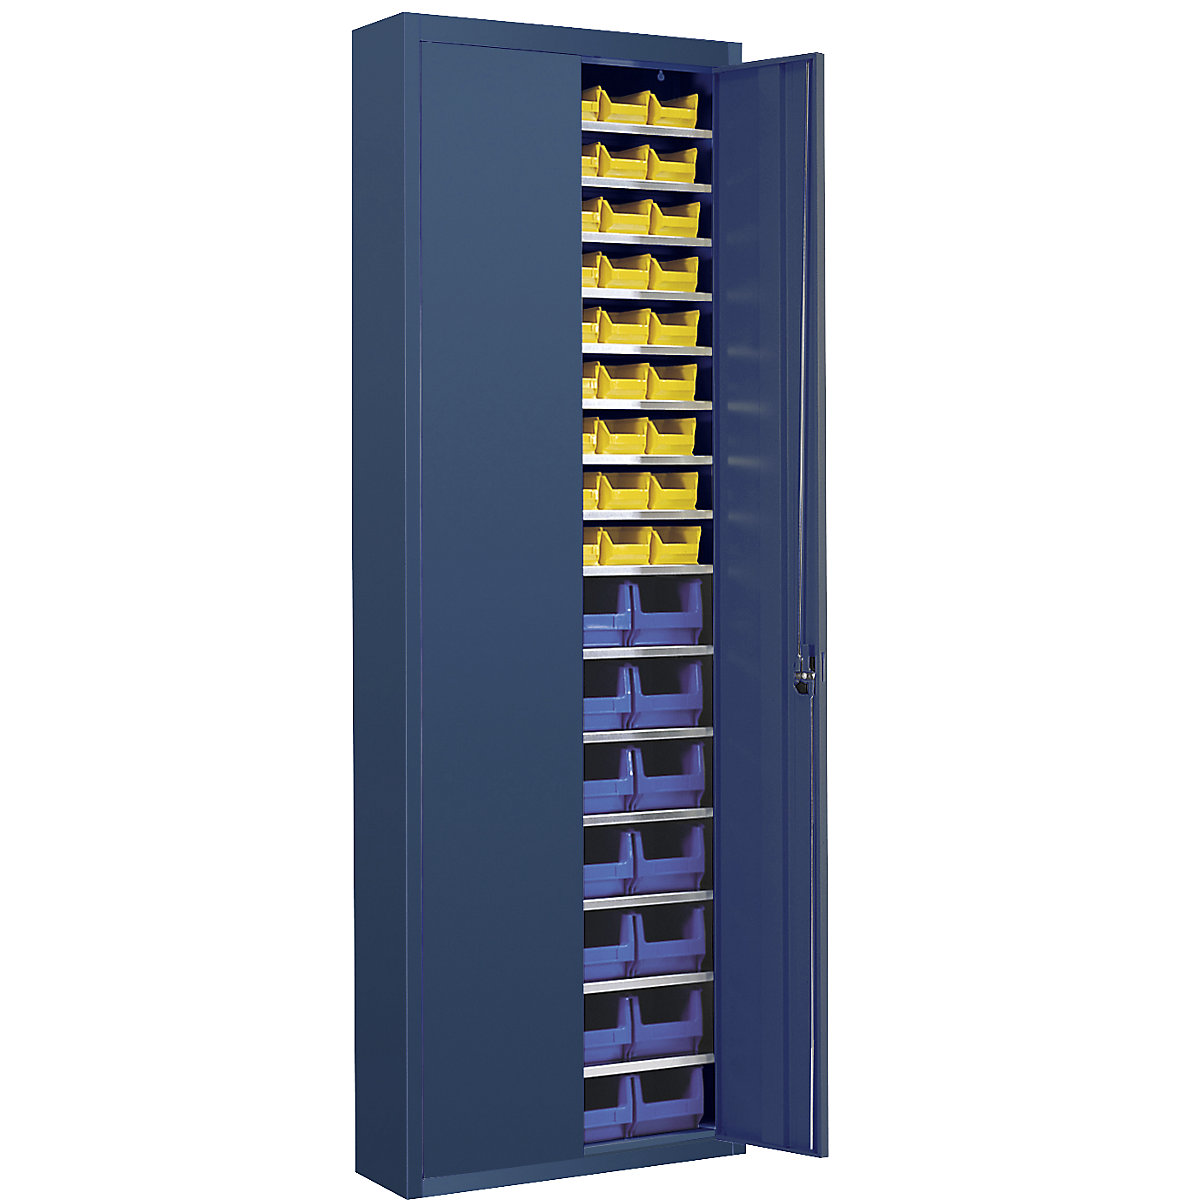 Magazijnkast met magazijnbakken – mauser, h x b x d = 2150 x 680 x 280 mm, eenkleurig, blauw, 82 bakken-1